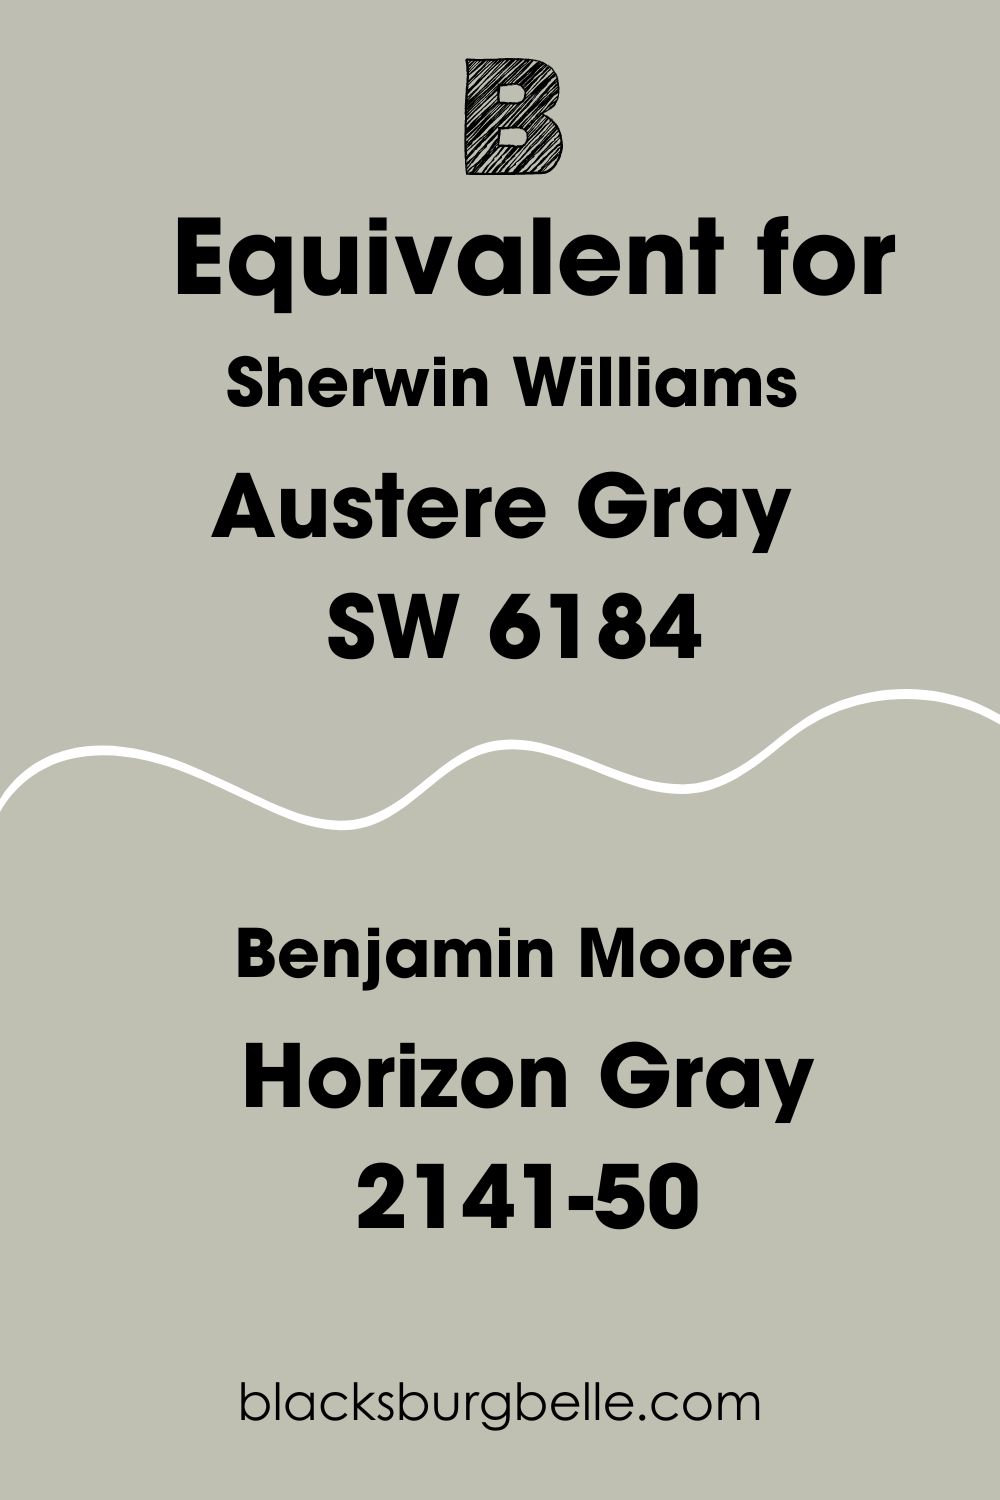 Benjamin Moore Horizon Gray 2141-50